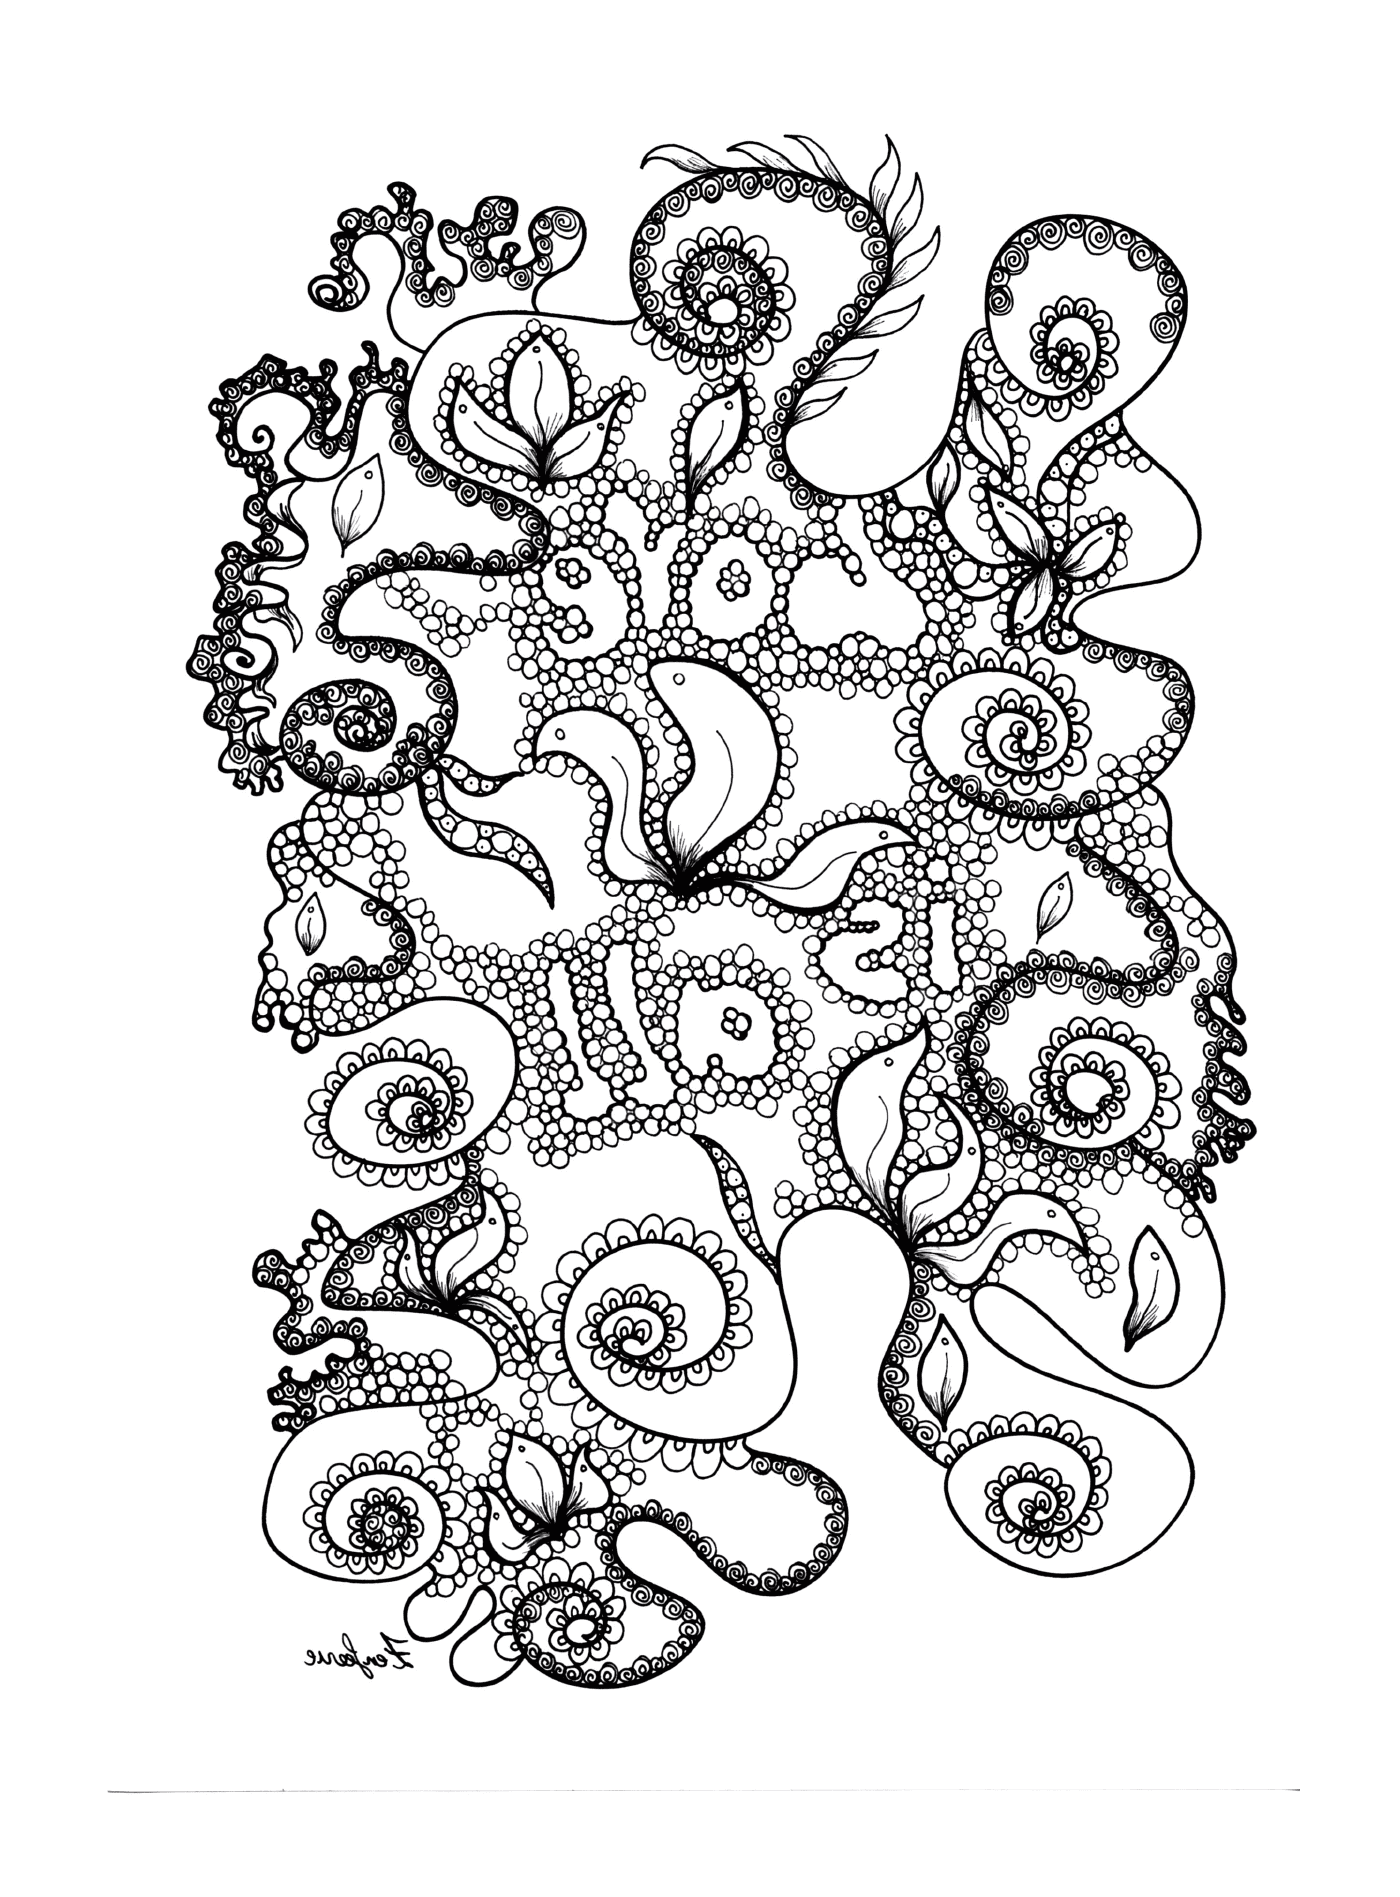   Créature marine avec des tentacules 